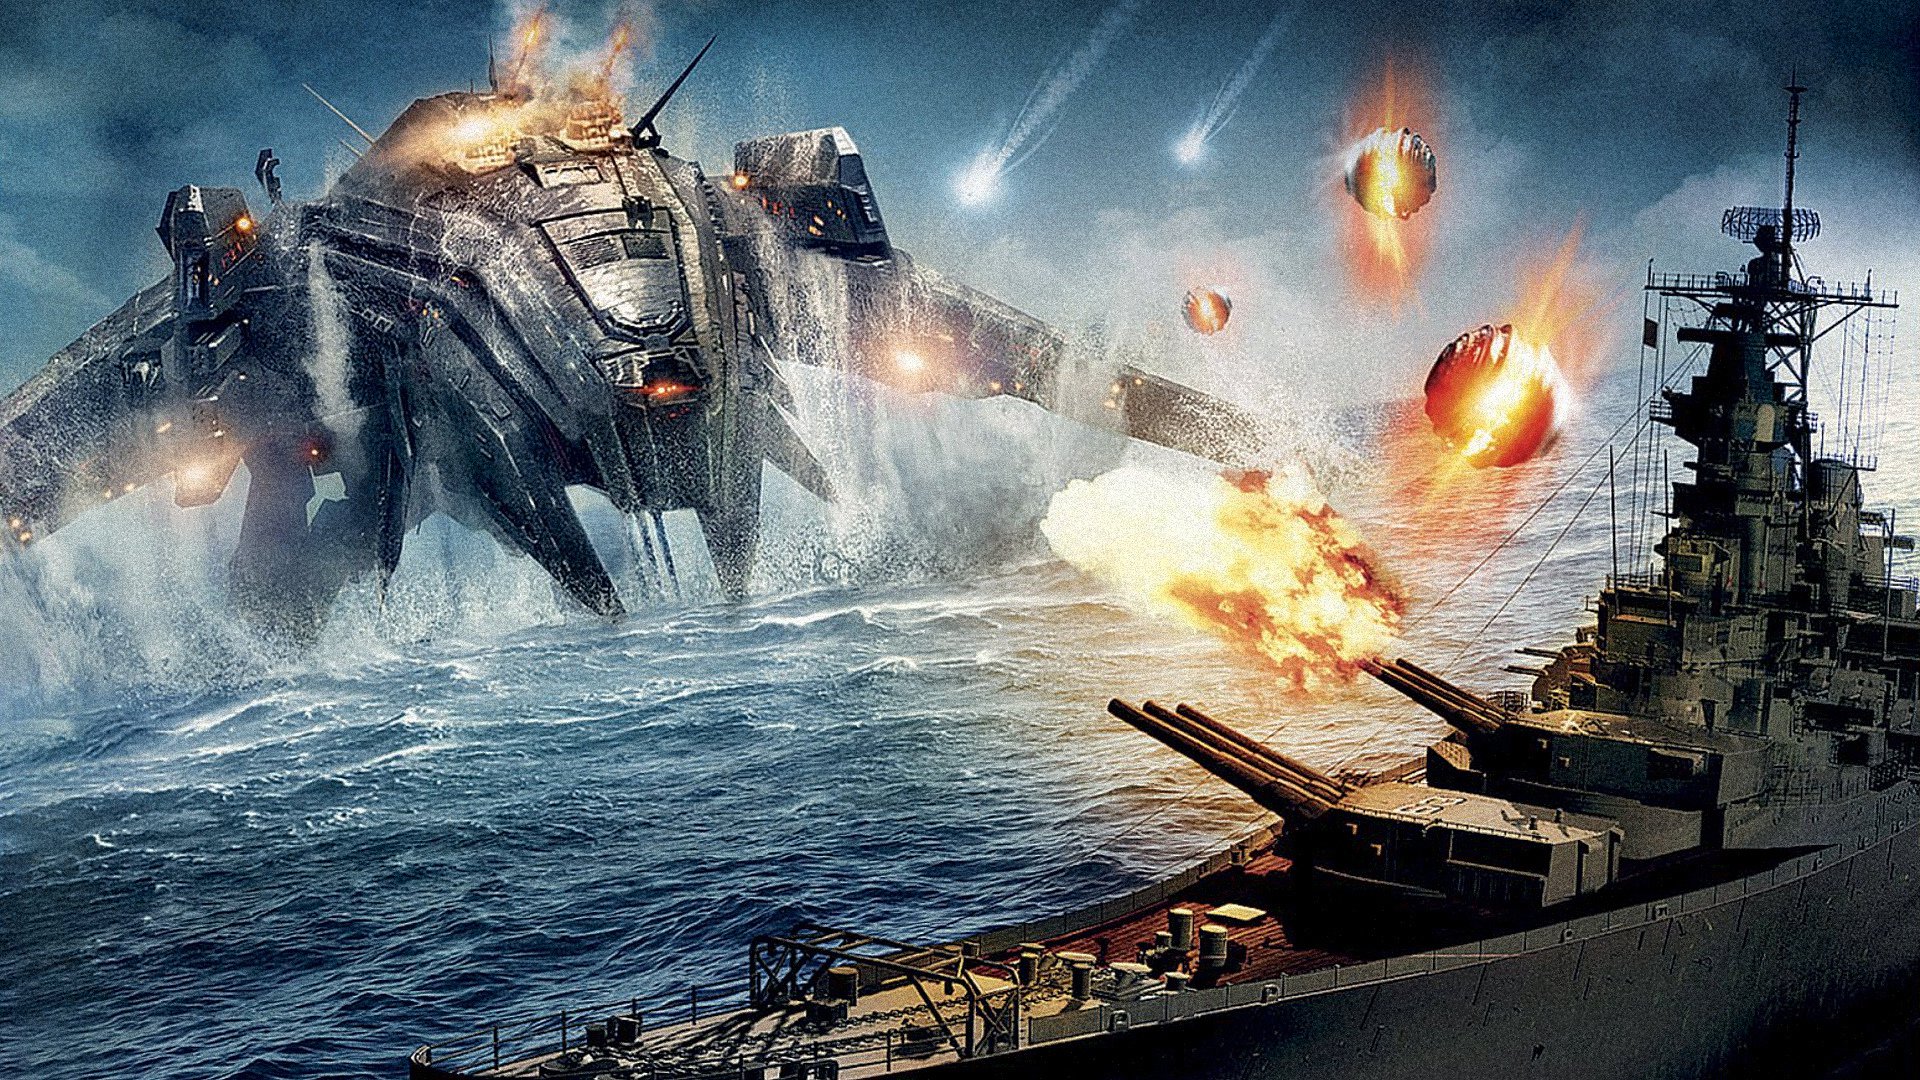 papel tapiz de cine,juego de acción y aventura,buque de guerra,embarcacion,vehículo,acorazado